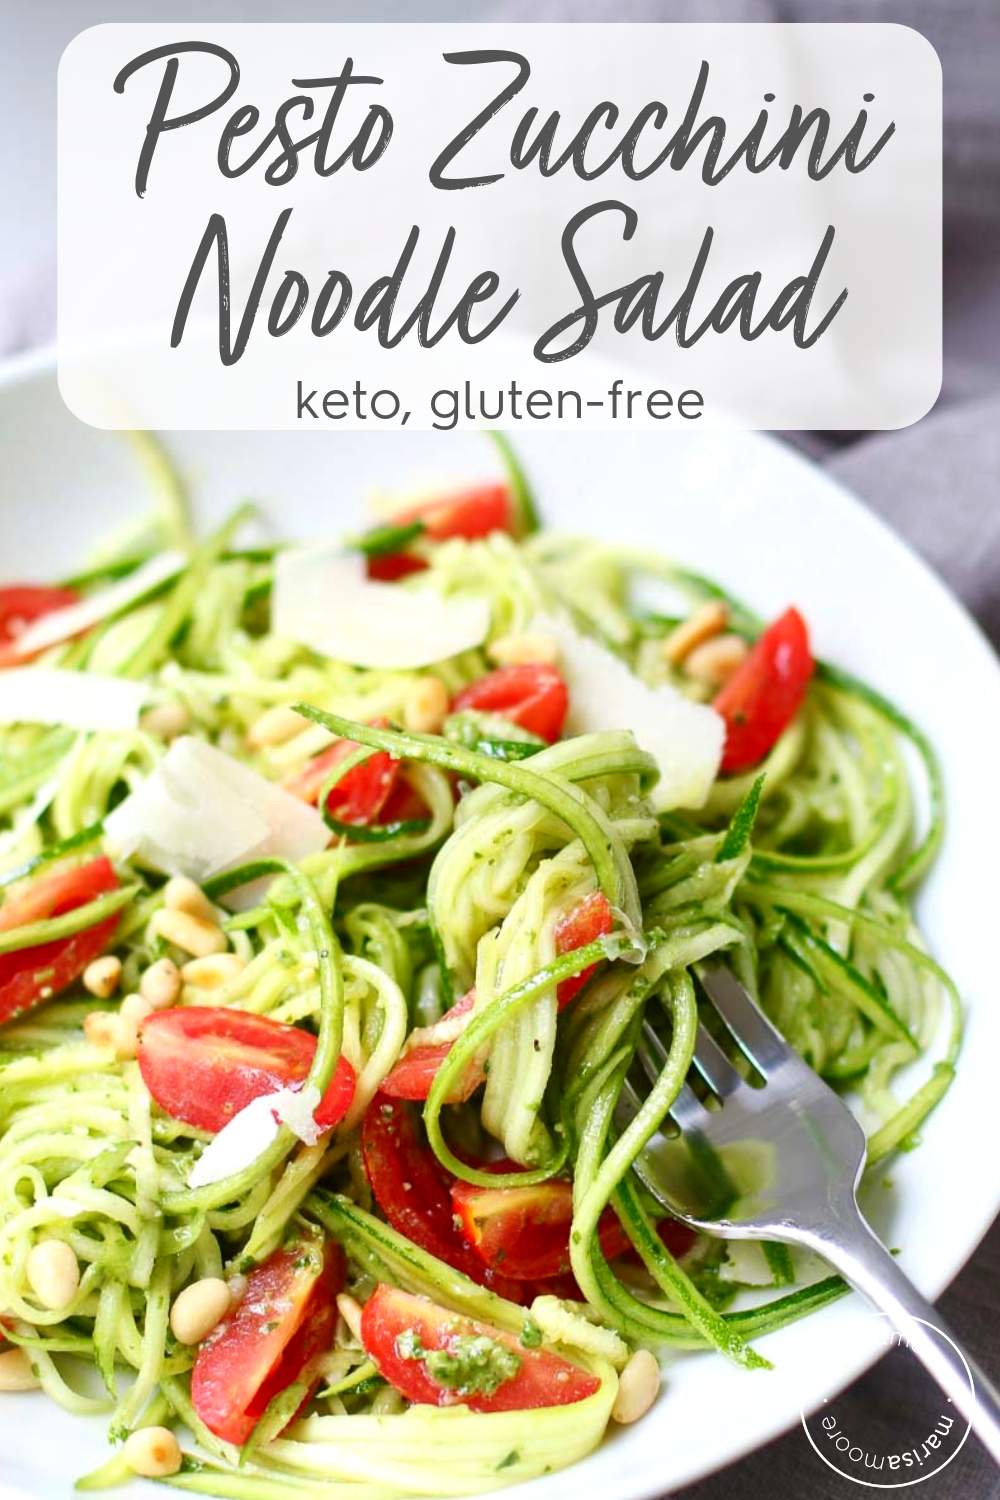 Pesto Zucchini Noodle Salad Recipe